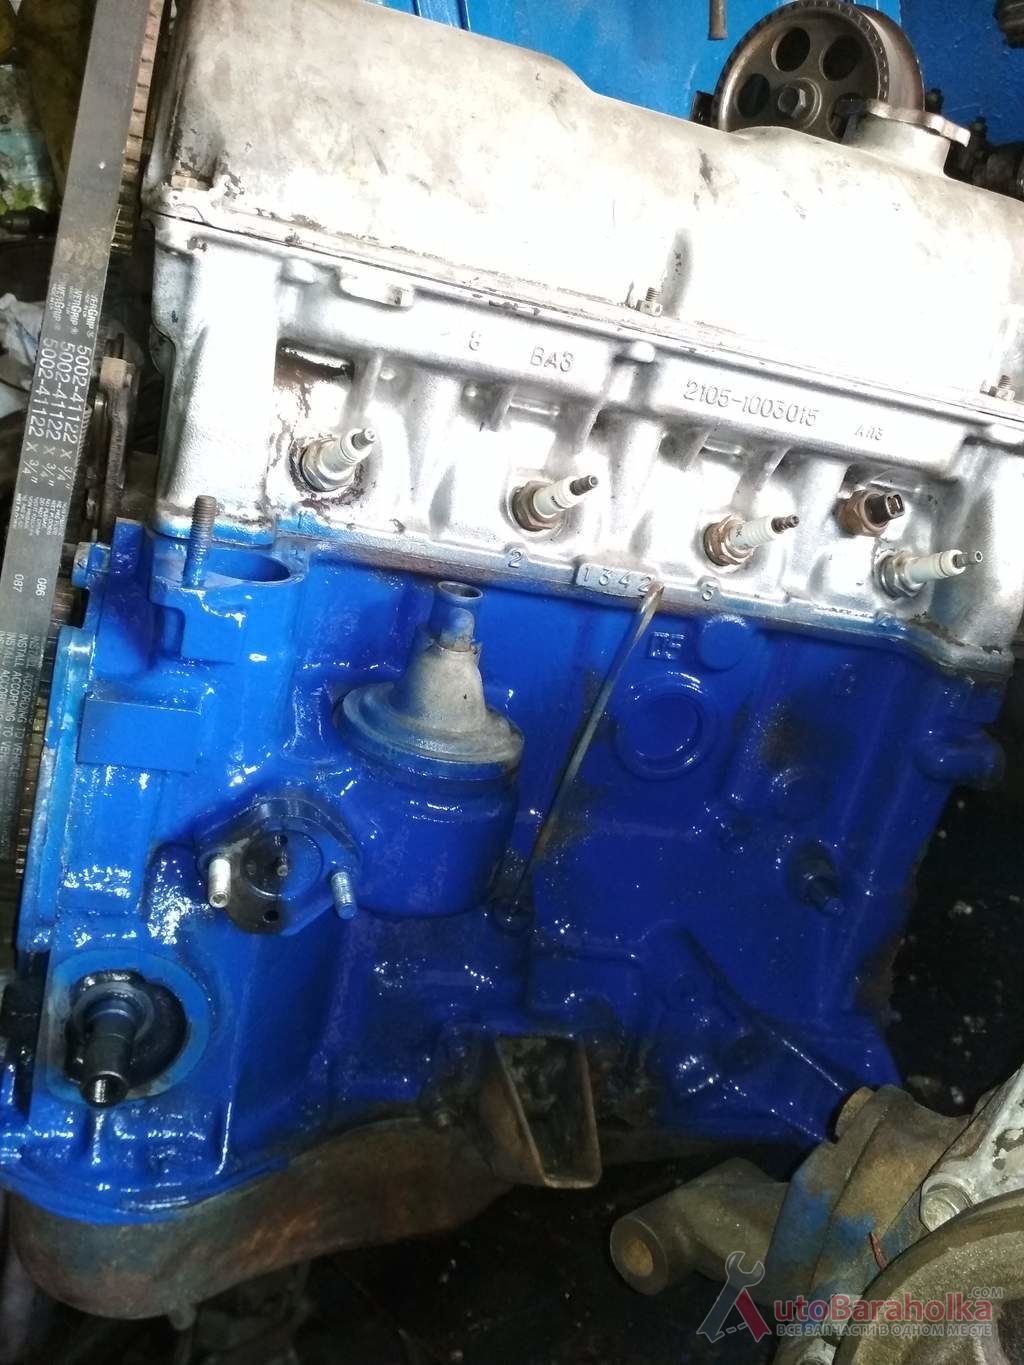 Продам Двигатель ВАЗ 2105 2107 из Польши. малый пробег. отличное состояние. проверенный. Гарантия Херсон